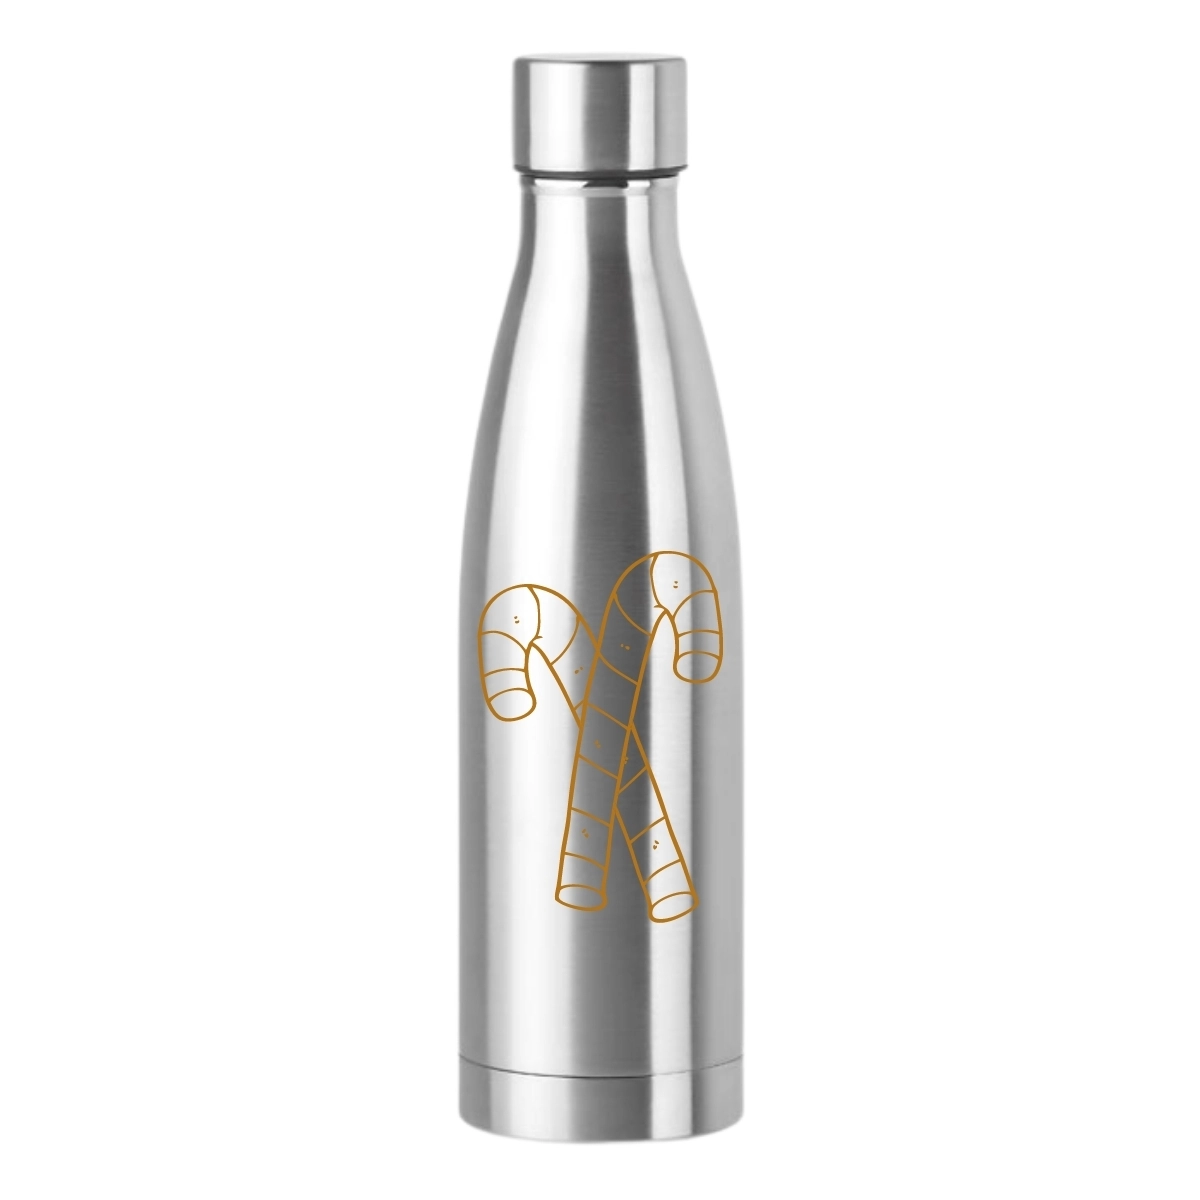 Świąteczna butelka 500ml cukierkowa srebrna jak włos anielski 2021  GR-147063BN srebrny
